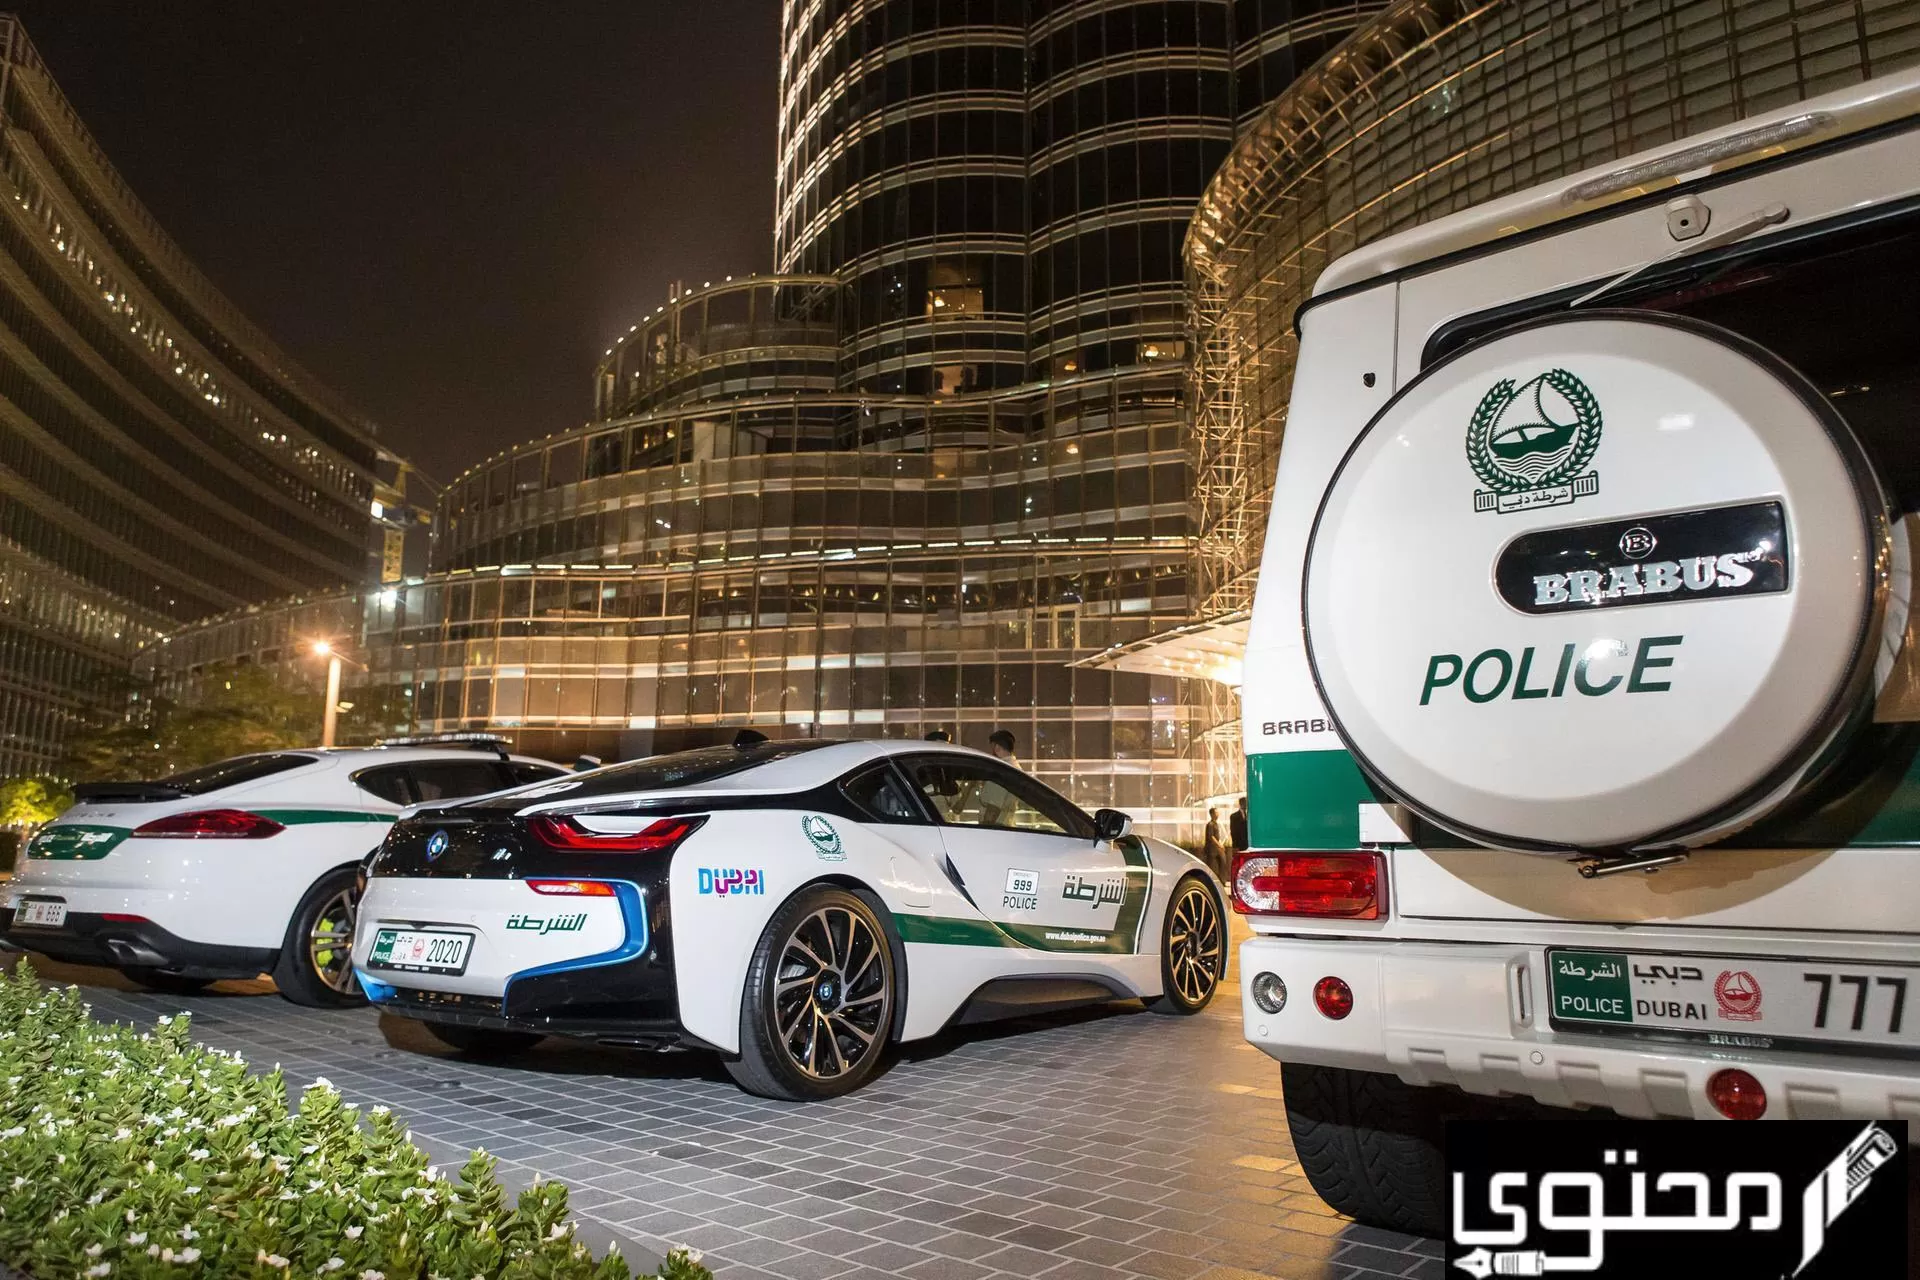 صور سيارات الشرطة في دبي